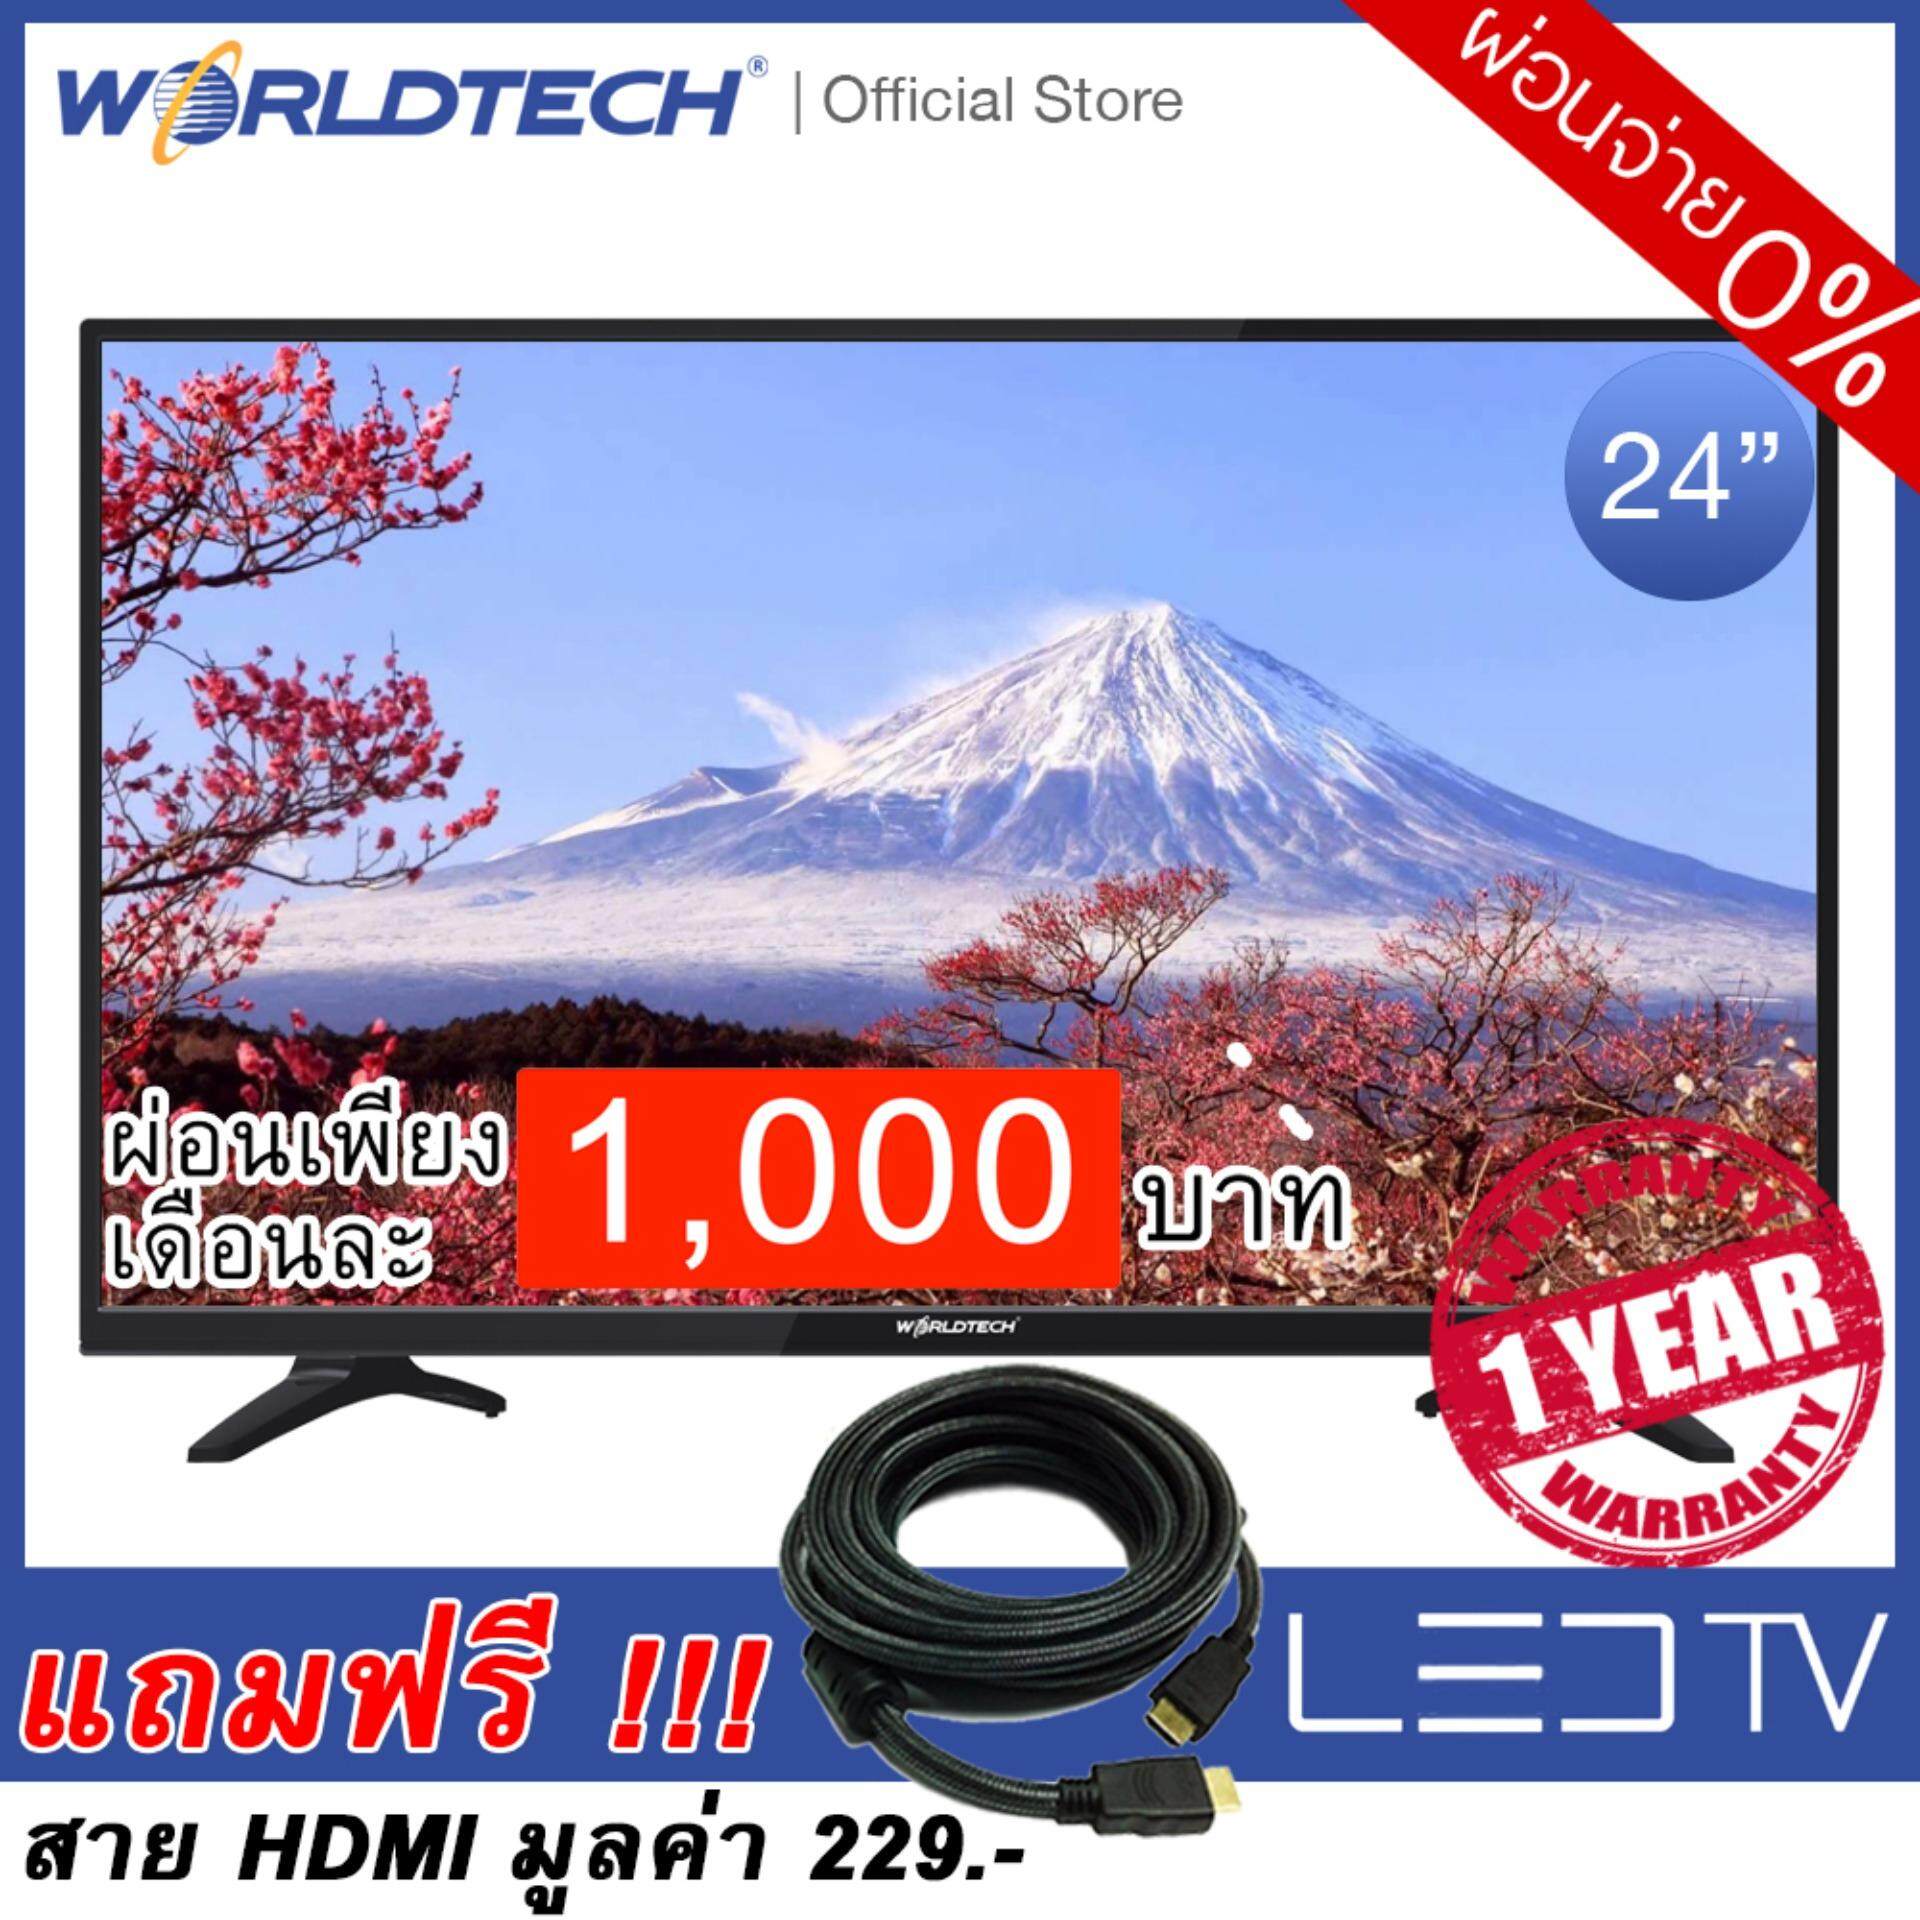 LEDTV (แอลอีดีทีวี) Worldtech ขนาด 24 นิ้ว รุ่น WT-LED2401 แถมฟรี !!! สาย HDMI จำนวน 1 เส้น 